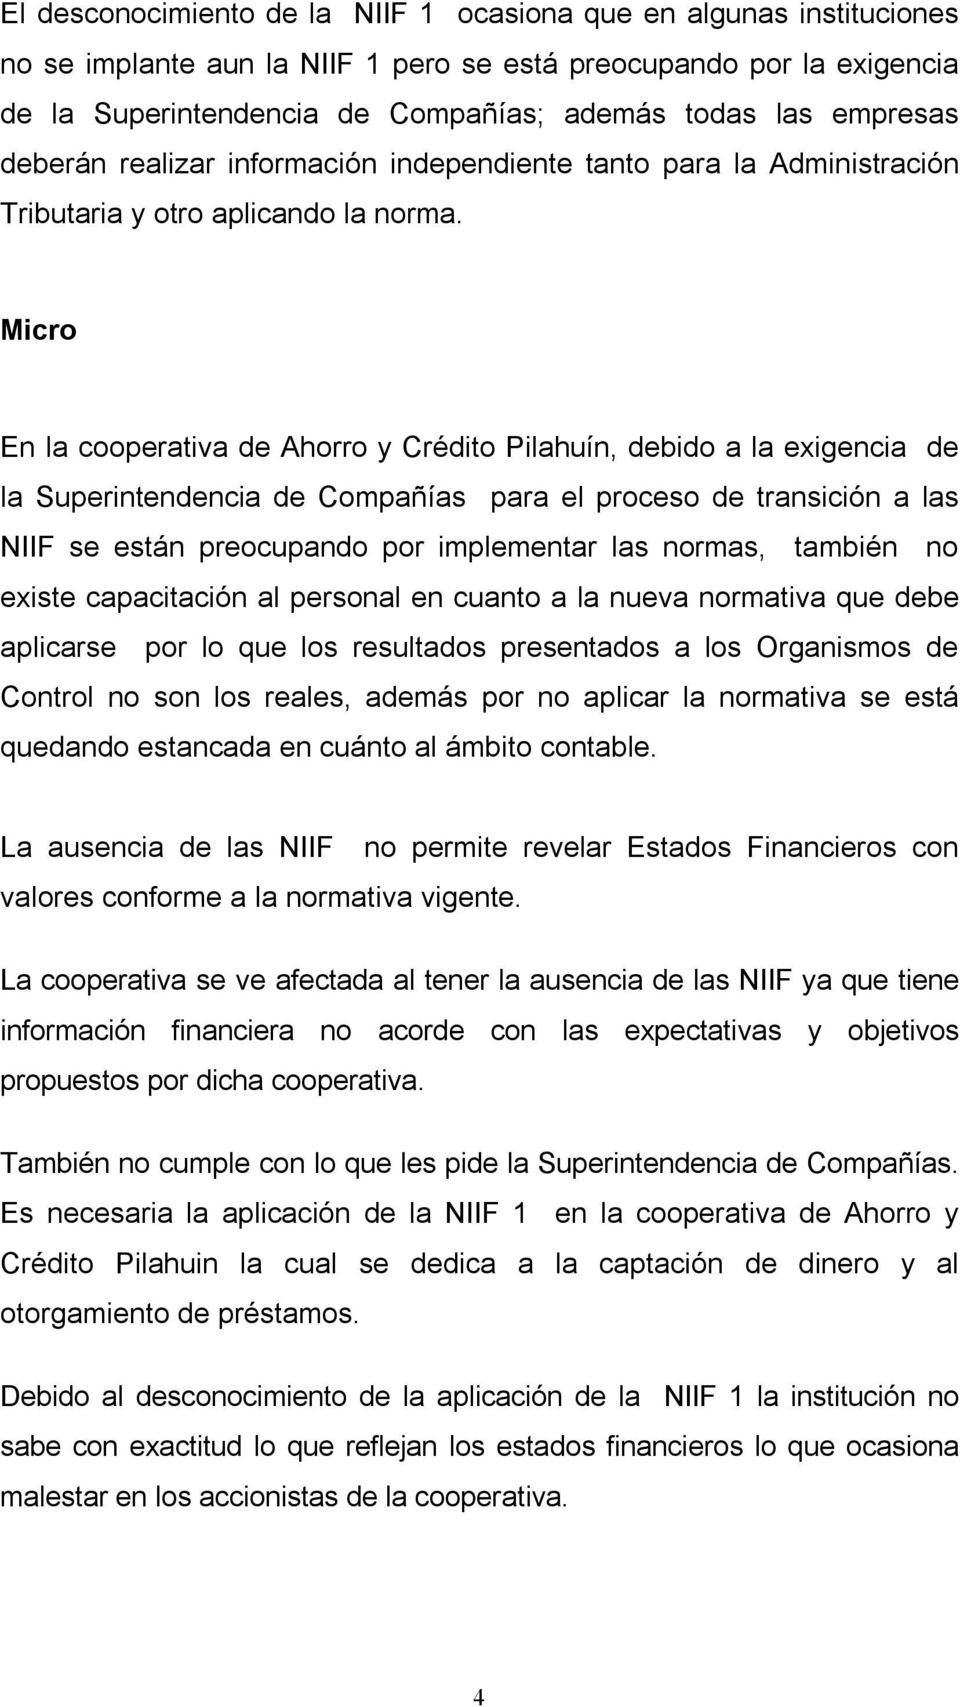 Micro En la cooperativa de Ahorro y Crédito Pilahuín, debido a la exigencia de la Superintendencia de Compañías para el proceso de transición a las NIIF se están preocupando por implementar las